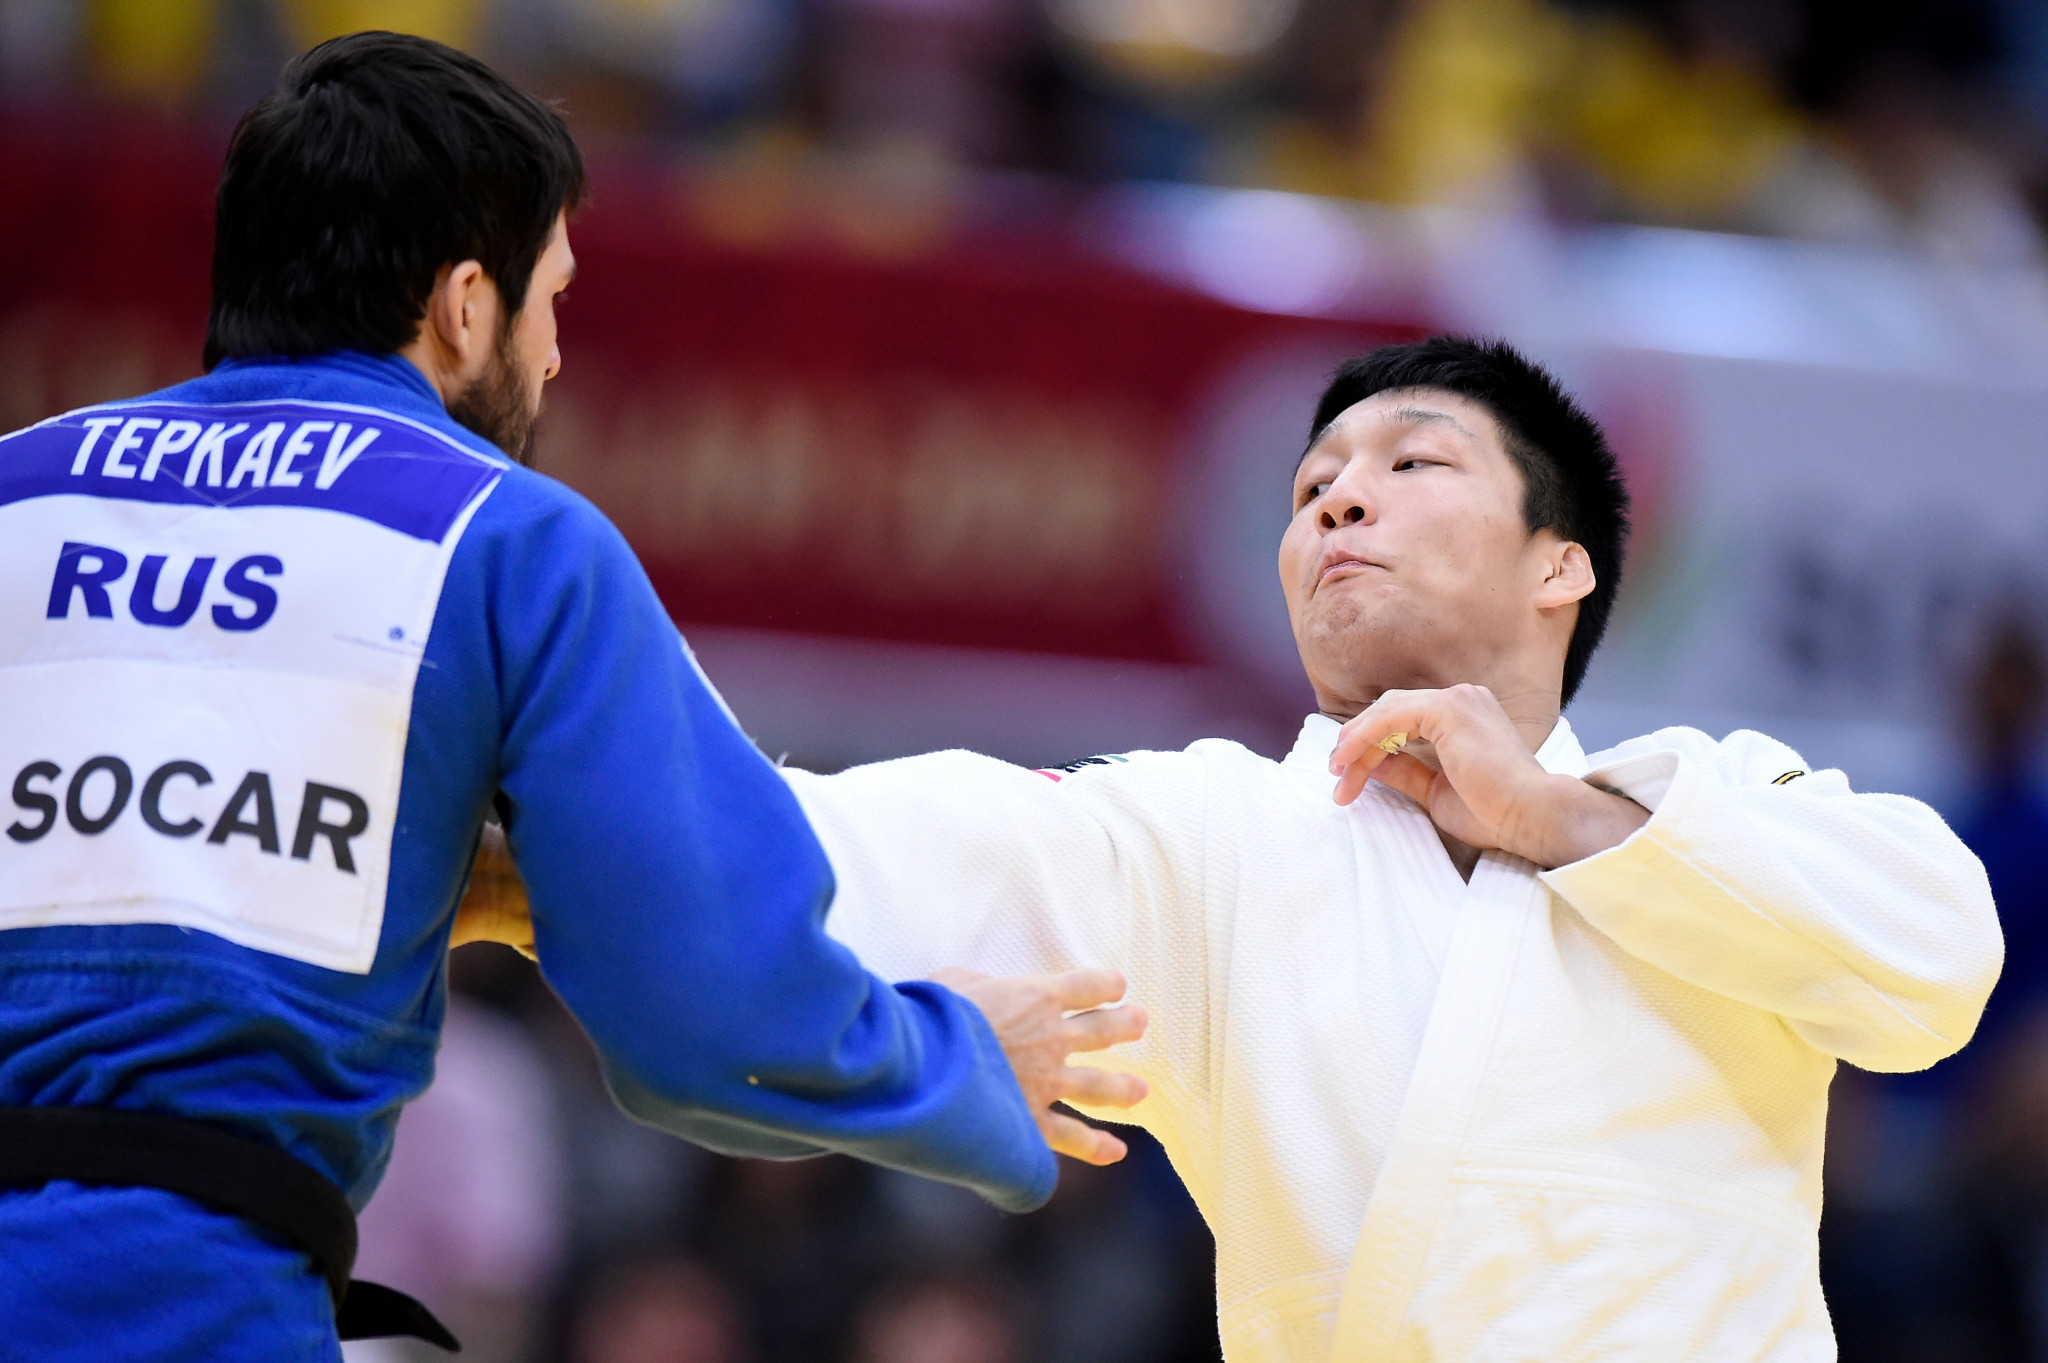 La decisión significa que el judoka ruso se perderá varios eventos importantes, incluidos los campeonatos europeos y mundiales, así como varios Grand Slams ©Getty Images